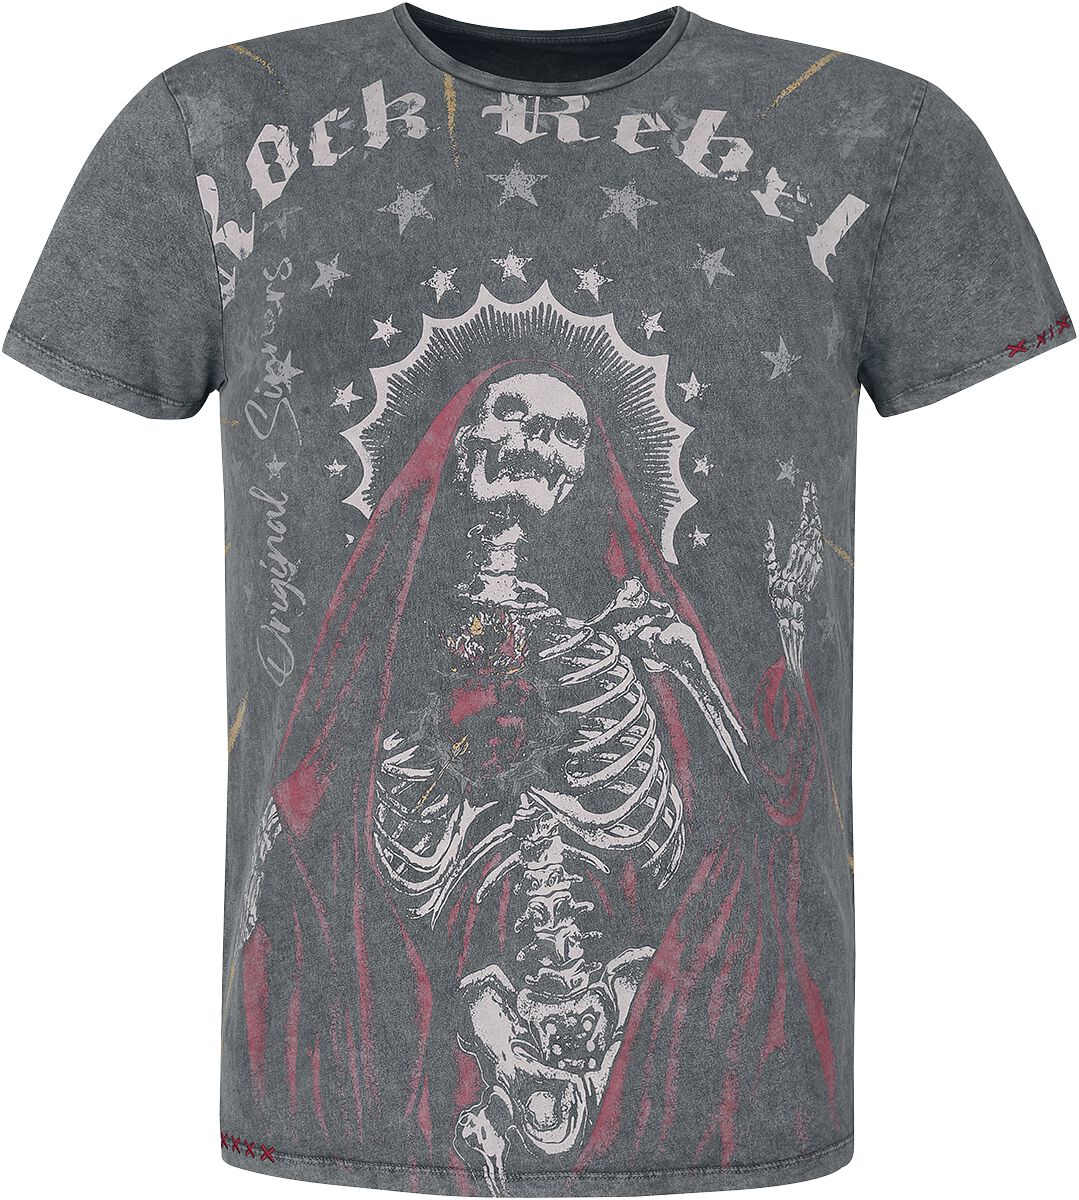 Rock Rebel by EMP - Rock T-Shirt - T-Shirt mit großem Frontprint - S bis XL - für Männer - Größe L - schwarz